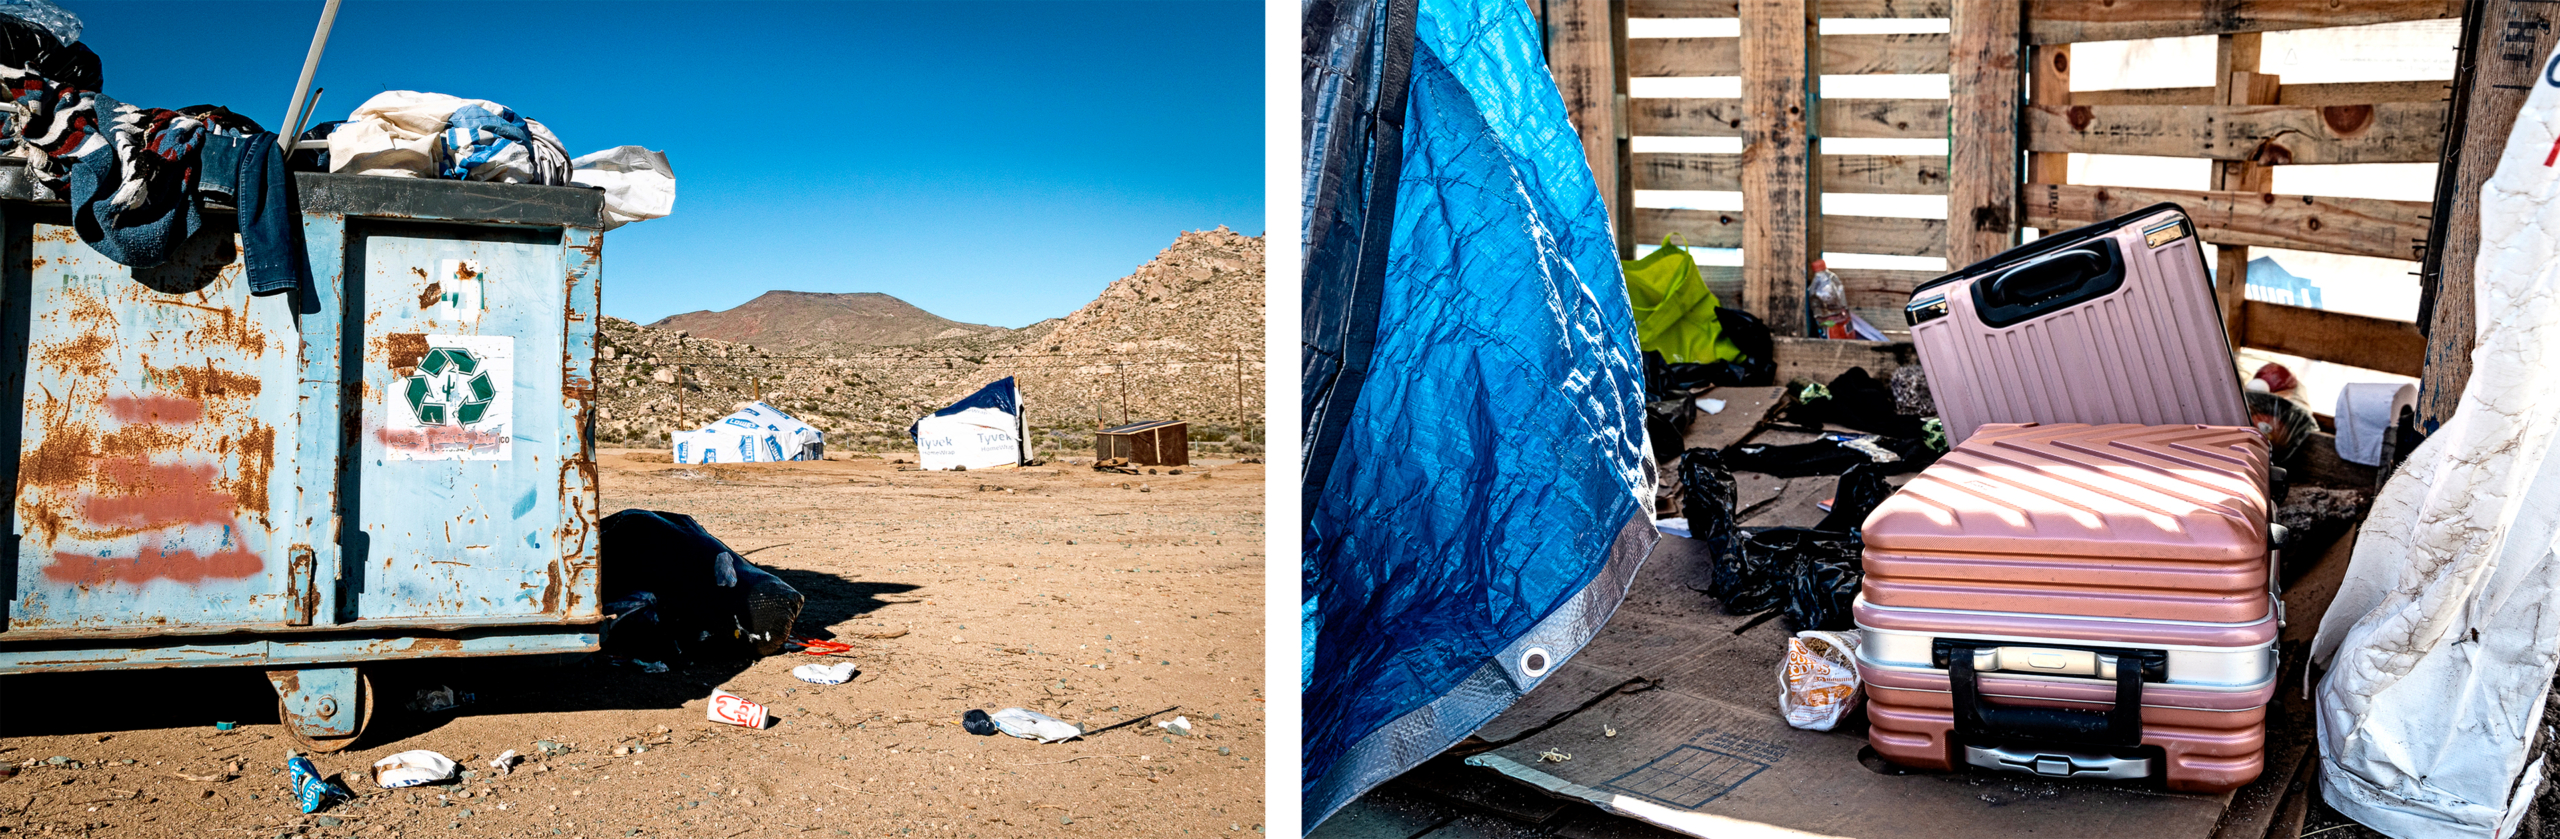 (Ảnh trên) Những người nhập cư bất hợp pháp đi qua một khoảng trống trên bức tường biên giới Hoa Kỳ để chờ các nhân viên Tuần tra Biên giới ở Jacumba, California, đến giải quyết thủ tục, hôm 07/12/2023. (Ảnh dưới bên trái) Các khu cắm trại gần bức tường biên giới Hoa Kỳ ở Jacumba, California, hôm 10/01/2024. (Ảnh dưới bên phải) Hành lý của những người nhập cư bất hợp pháp ở Jacumba. (Ảnh: John Fredricks/The Epoch Times)